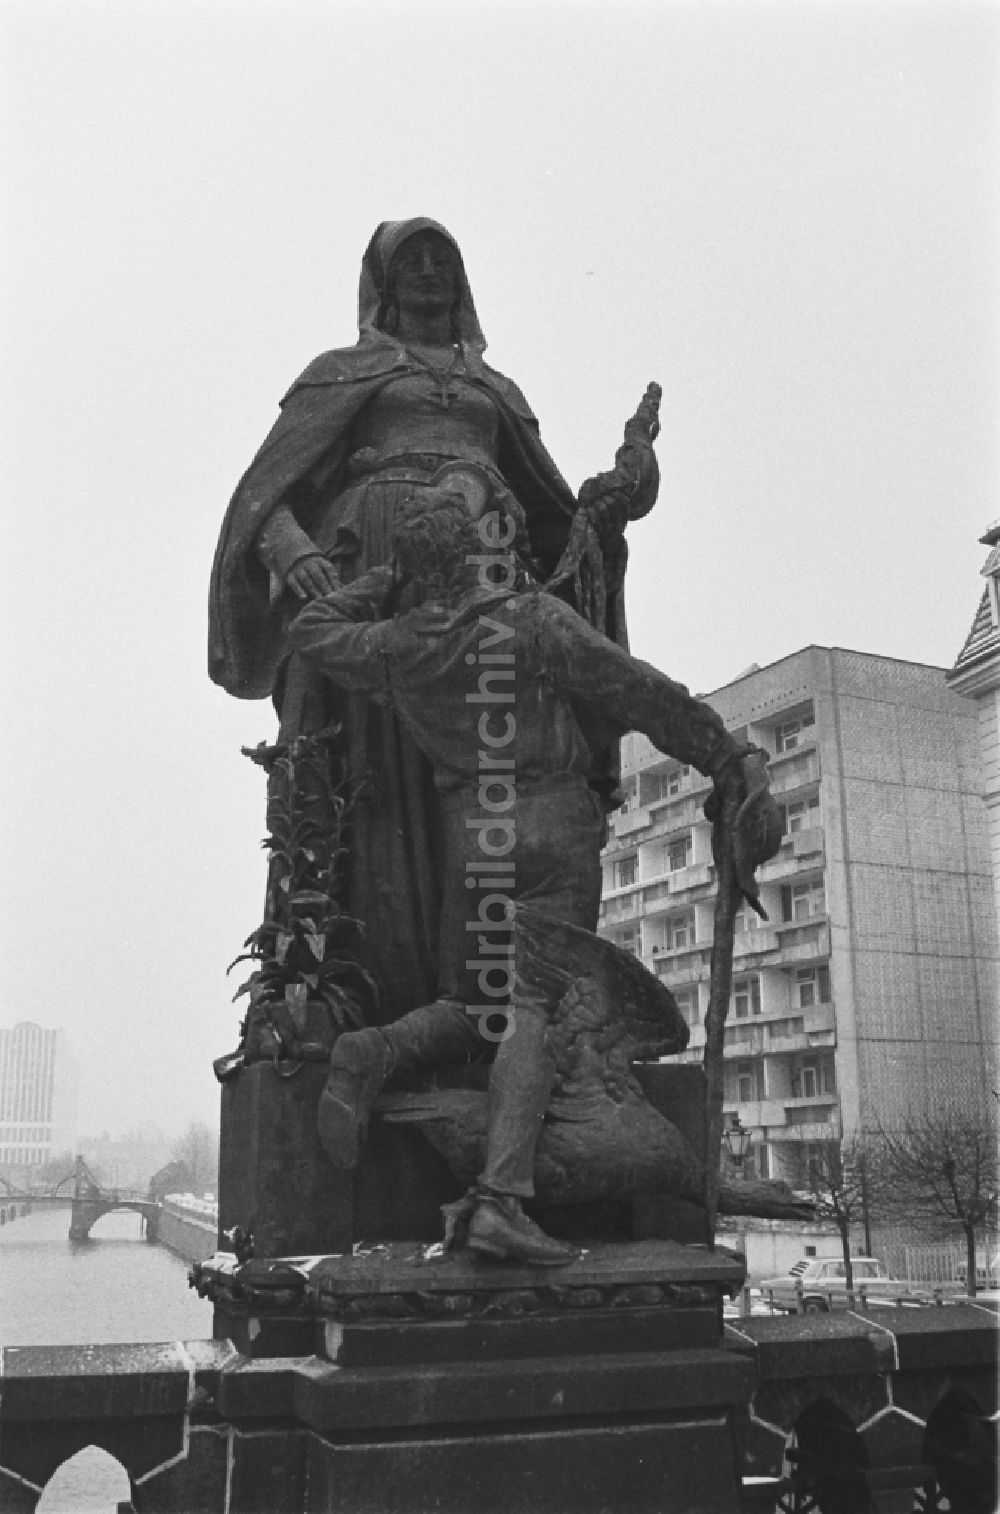 DDR-Fotoarchiv: Berlin - Skulptur Heilige Gertraud in Berlin, der ehemaligen Hauptstadt der DDR, Deutsche Demokratische Republik